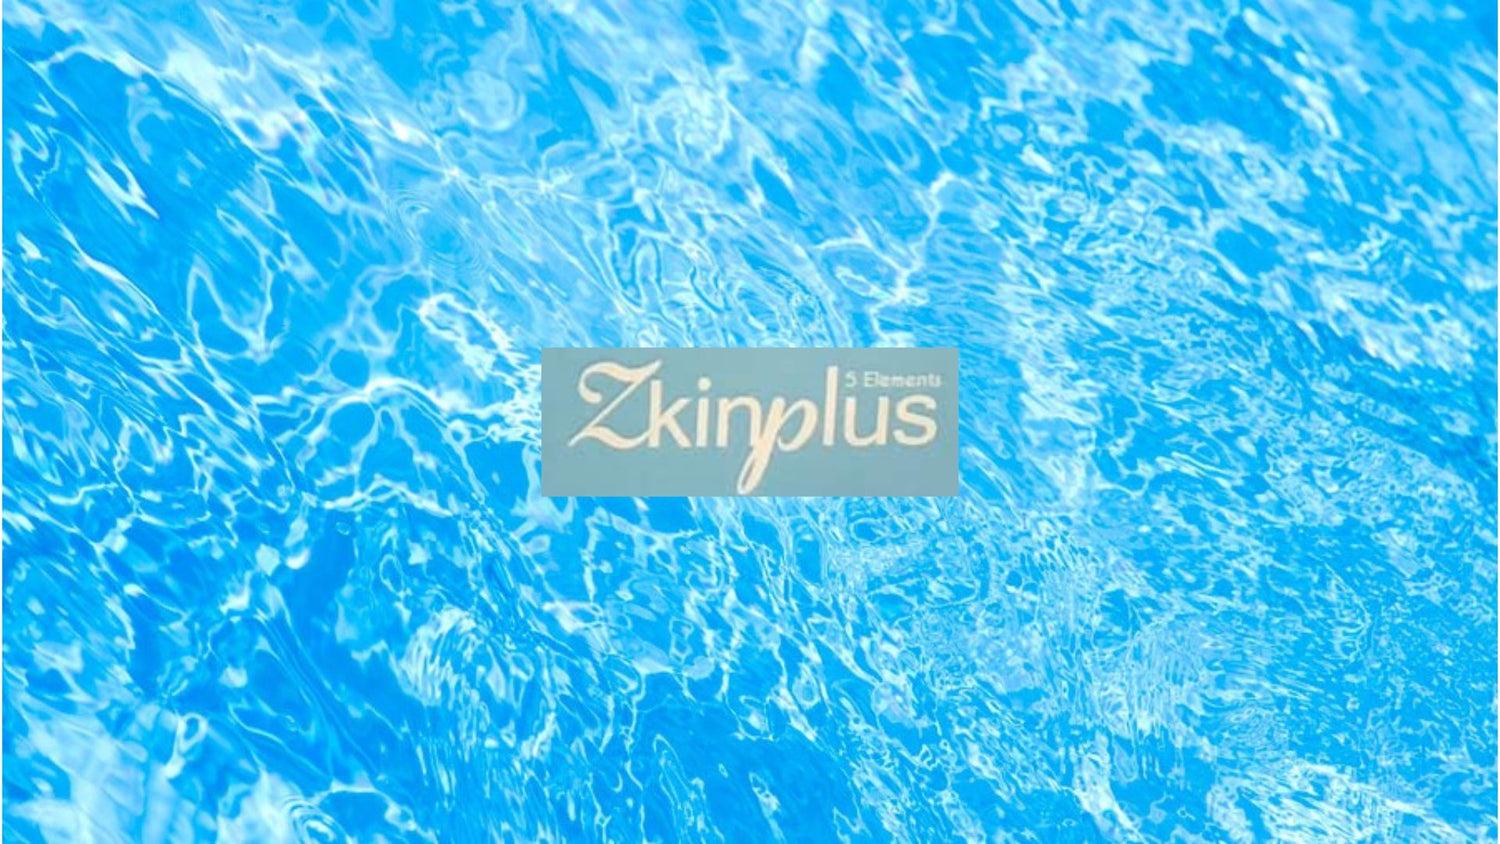 Zkinplus